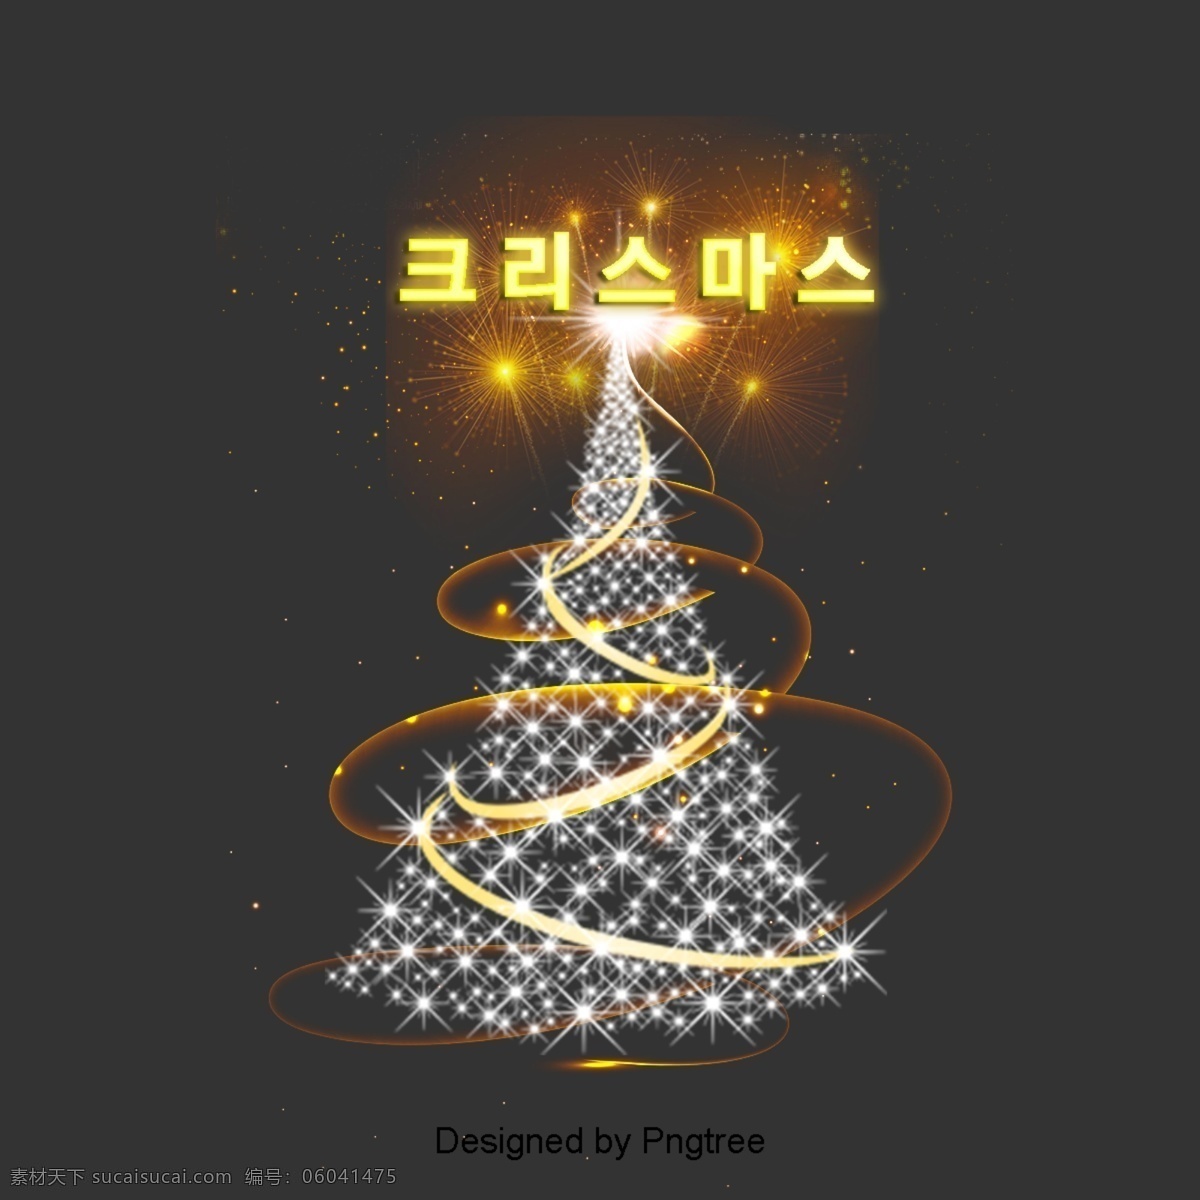 快乐 圣诞 灯 闪烁 字体 圣诞树 场面 圣诞节快乐 动画片 圣诞节